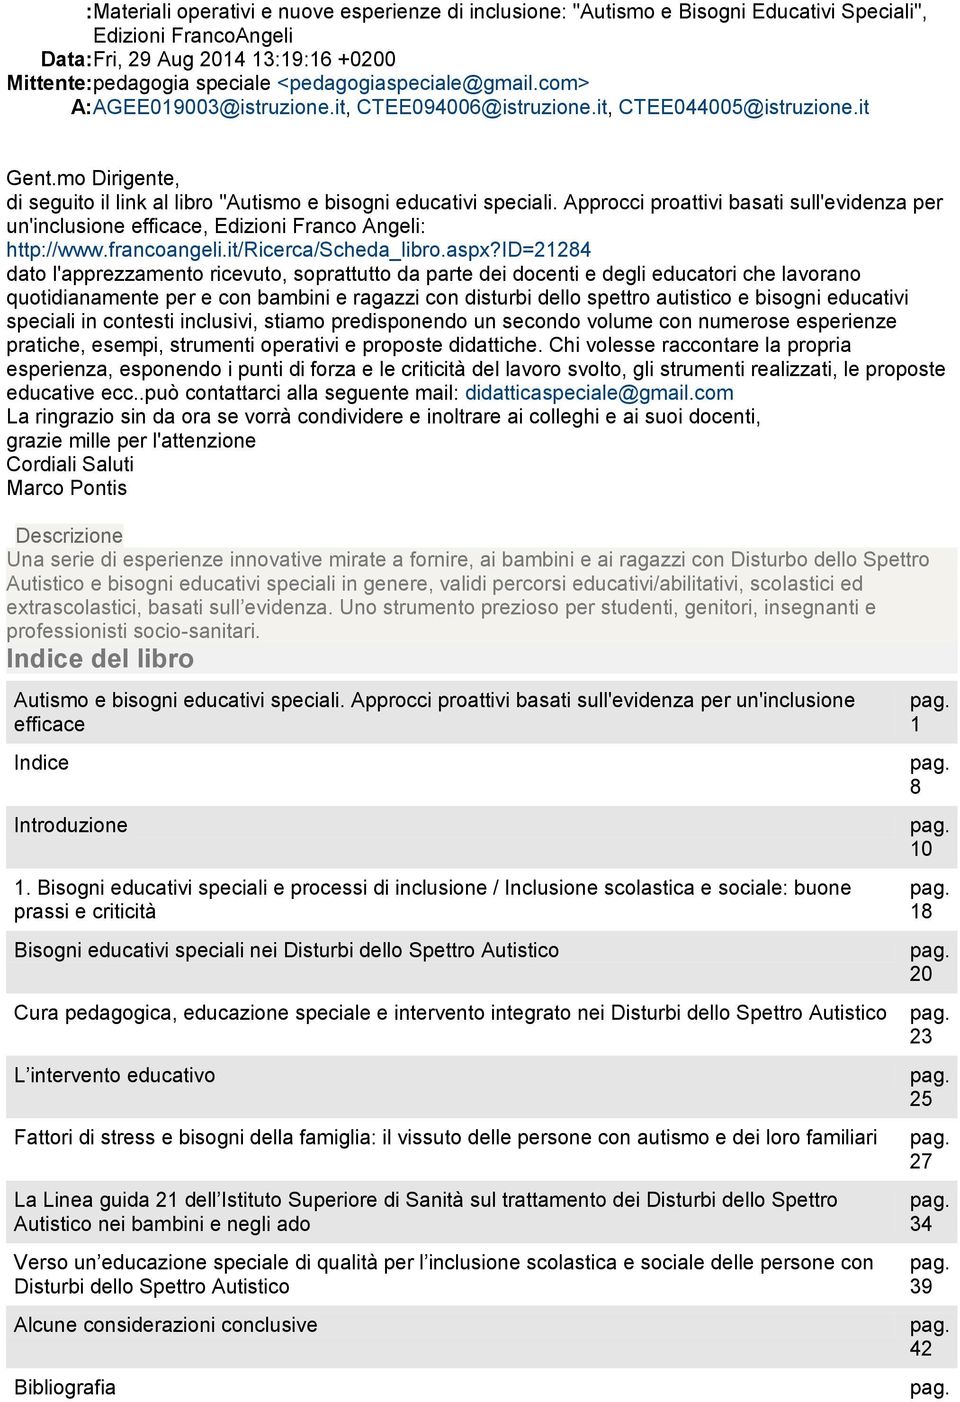 Approcci proattivi basati sull'evidenza per un'inclusione efficace, Edizioni Franco Angeli: http://www.francoangeli.it/ricerca/scheda_libro.aspx?